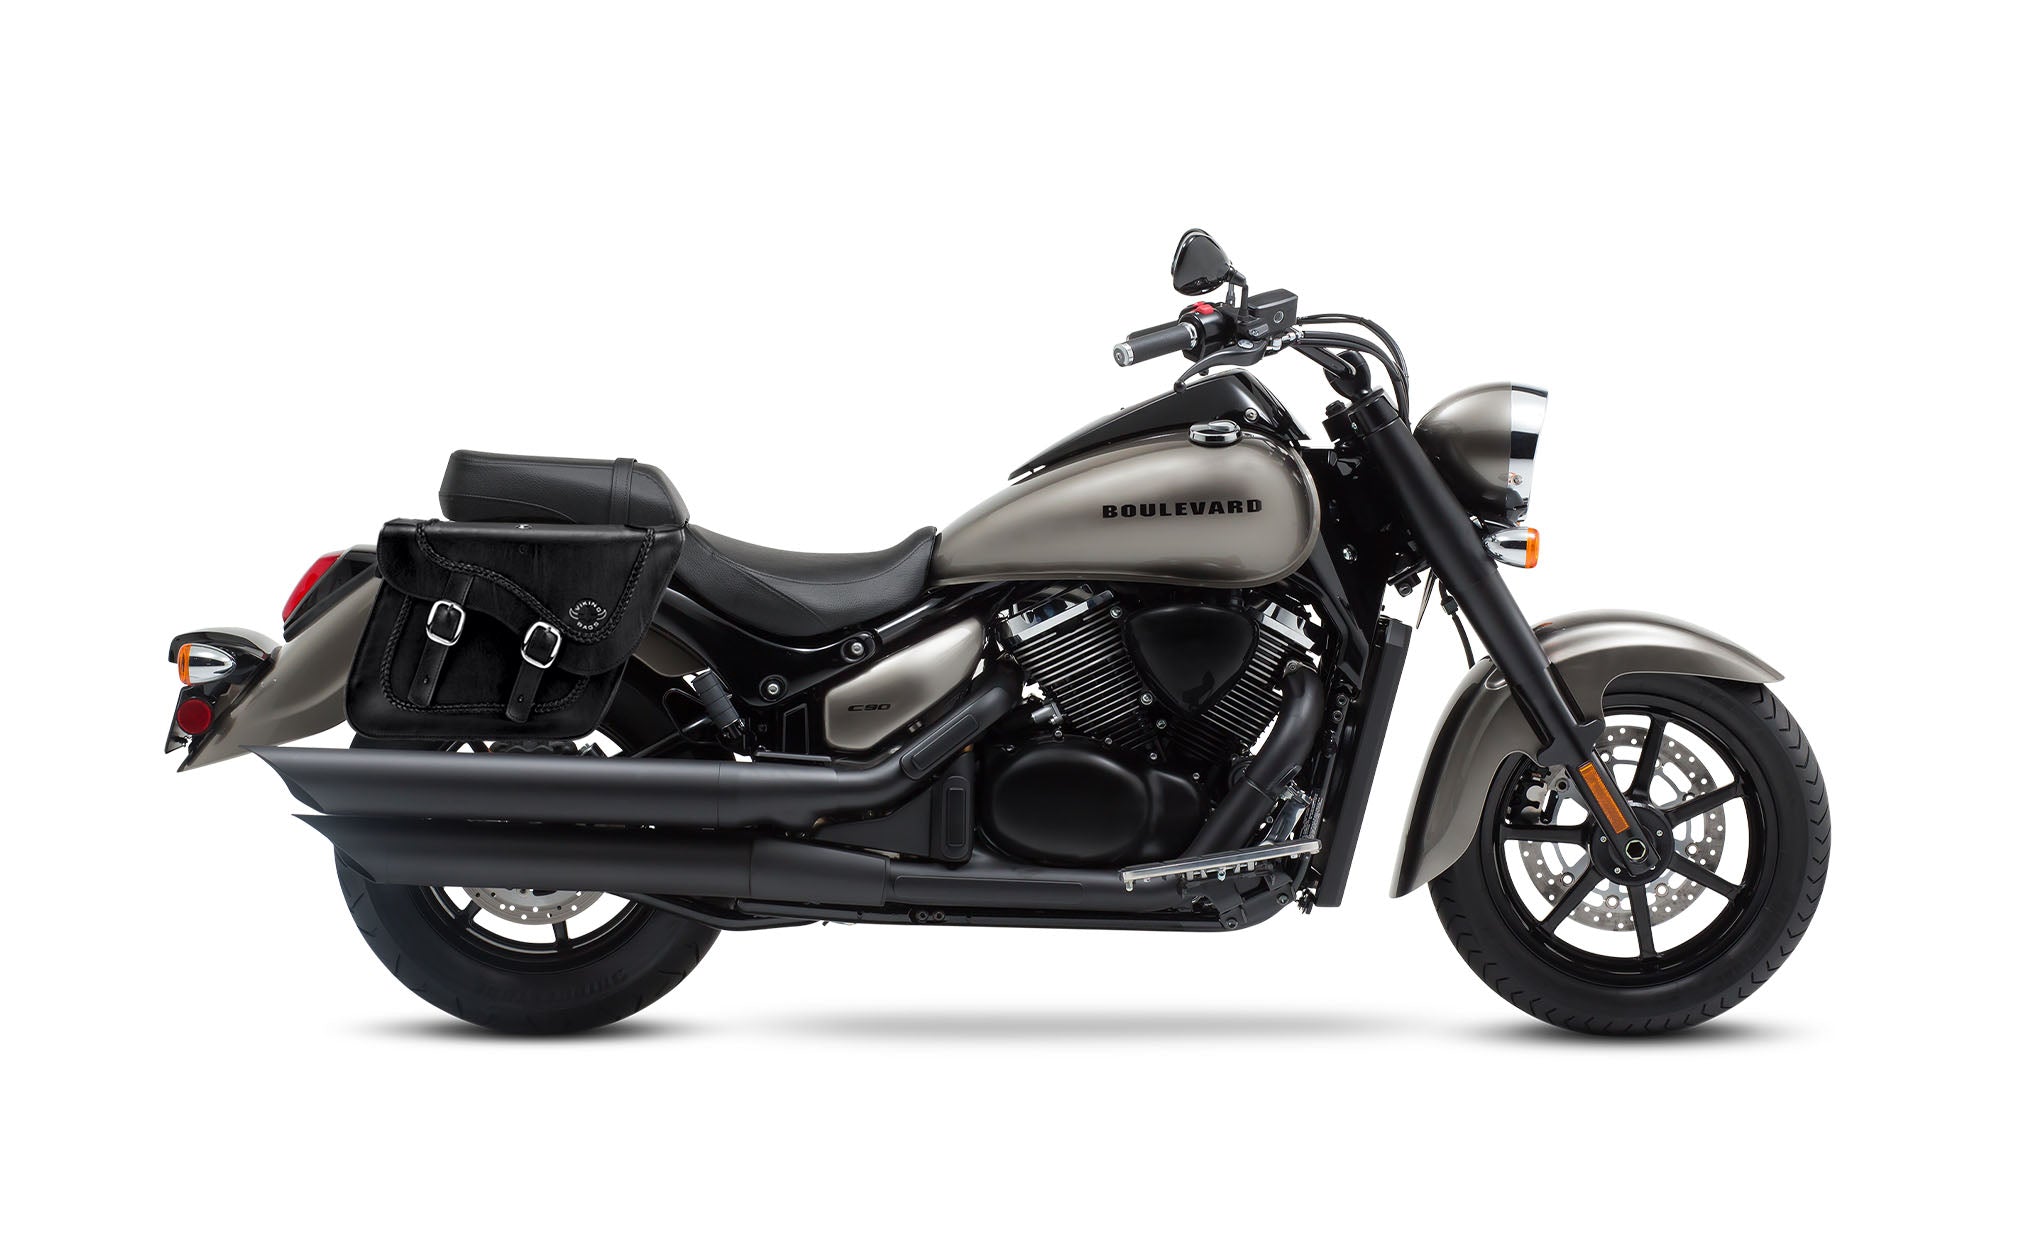 Viking Americano Suzuki Boulevard C90 Vl1500 Braided Large Leather Motorcycle Saddlebags on Bike Photo @expand